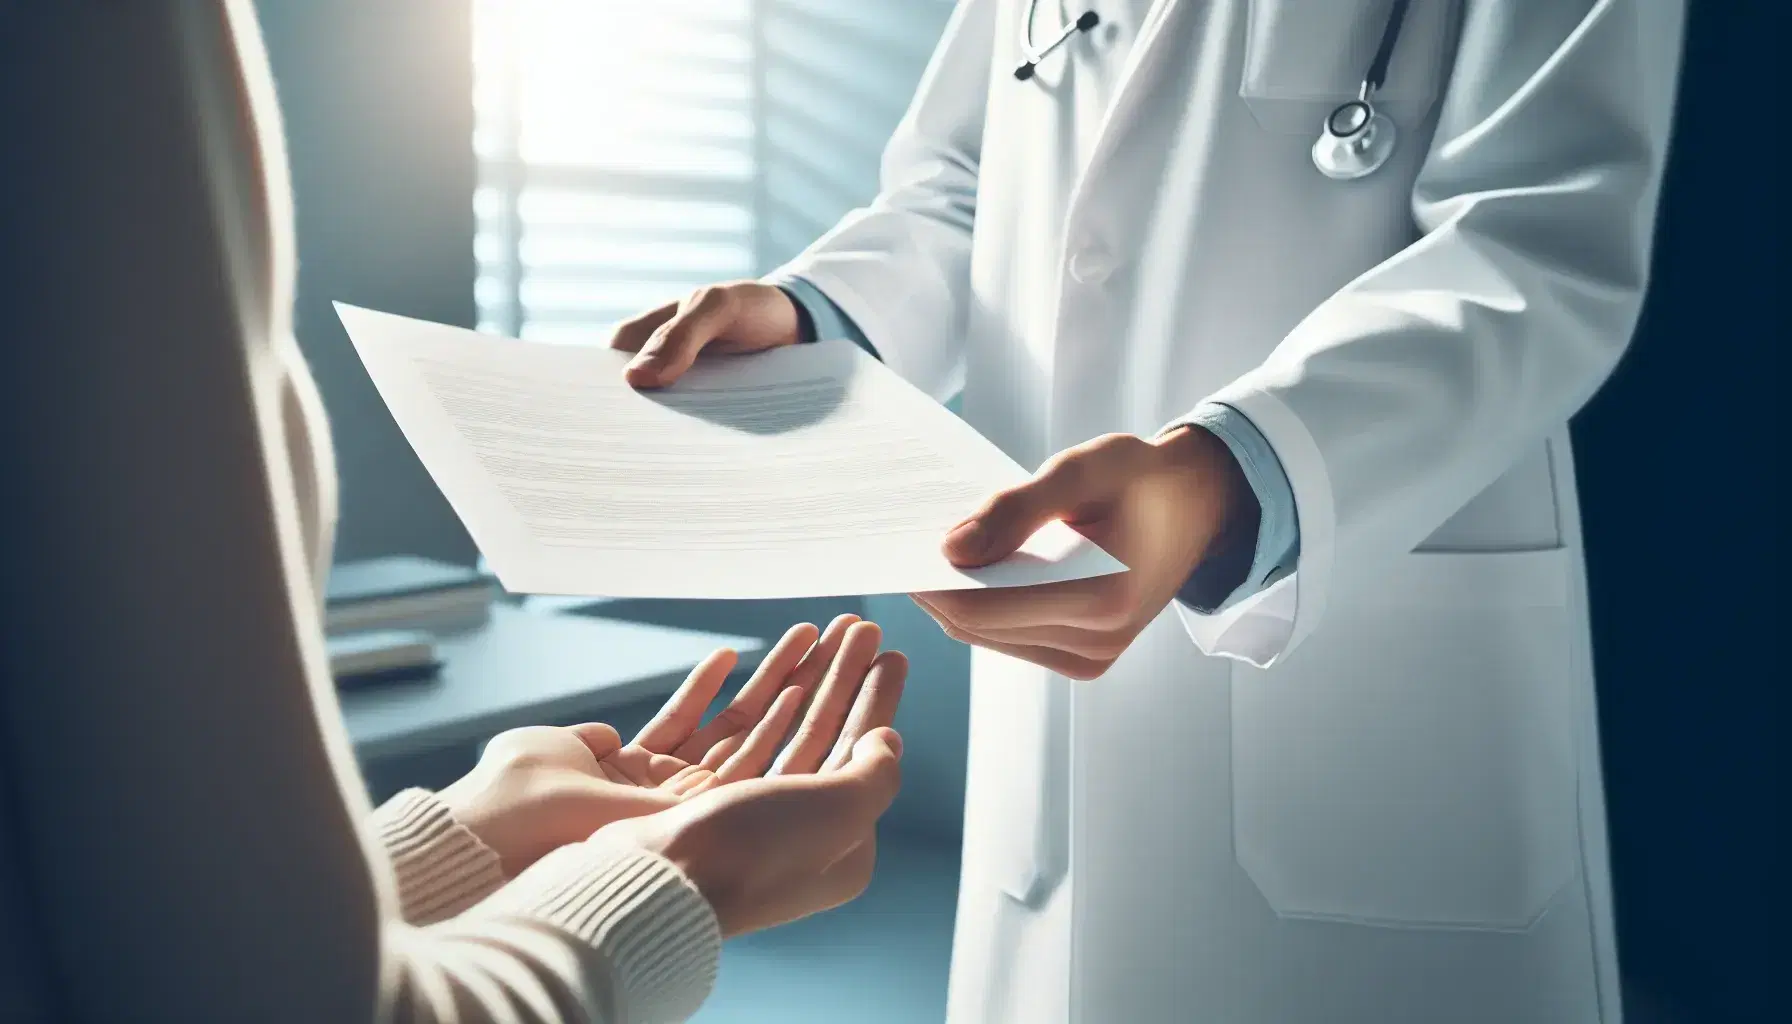 Manos de profesional de la salud en bata blanca entregando documento en blanco a paciente en entorno clínico con estetoscopio al fondo.